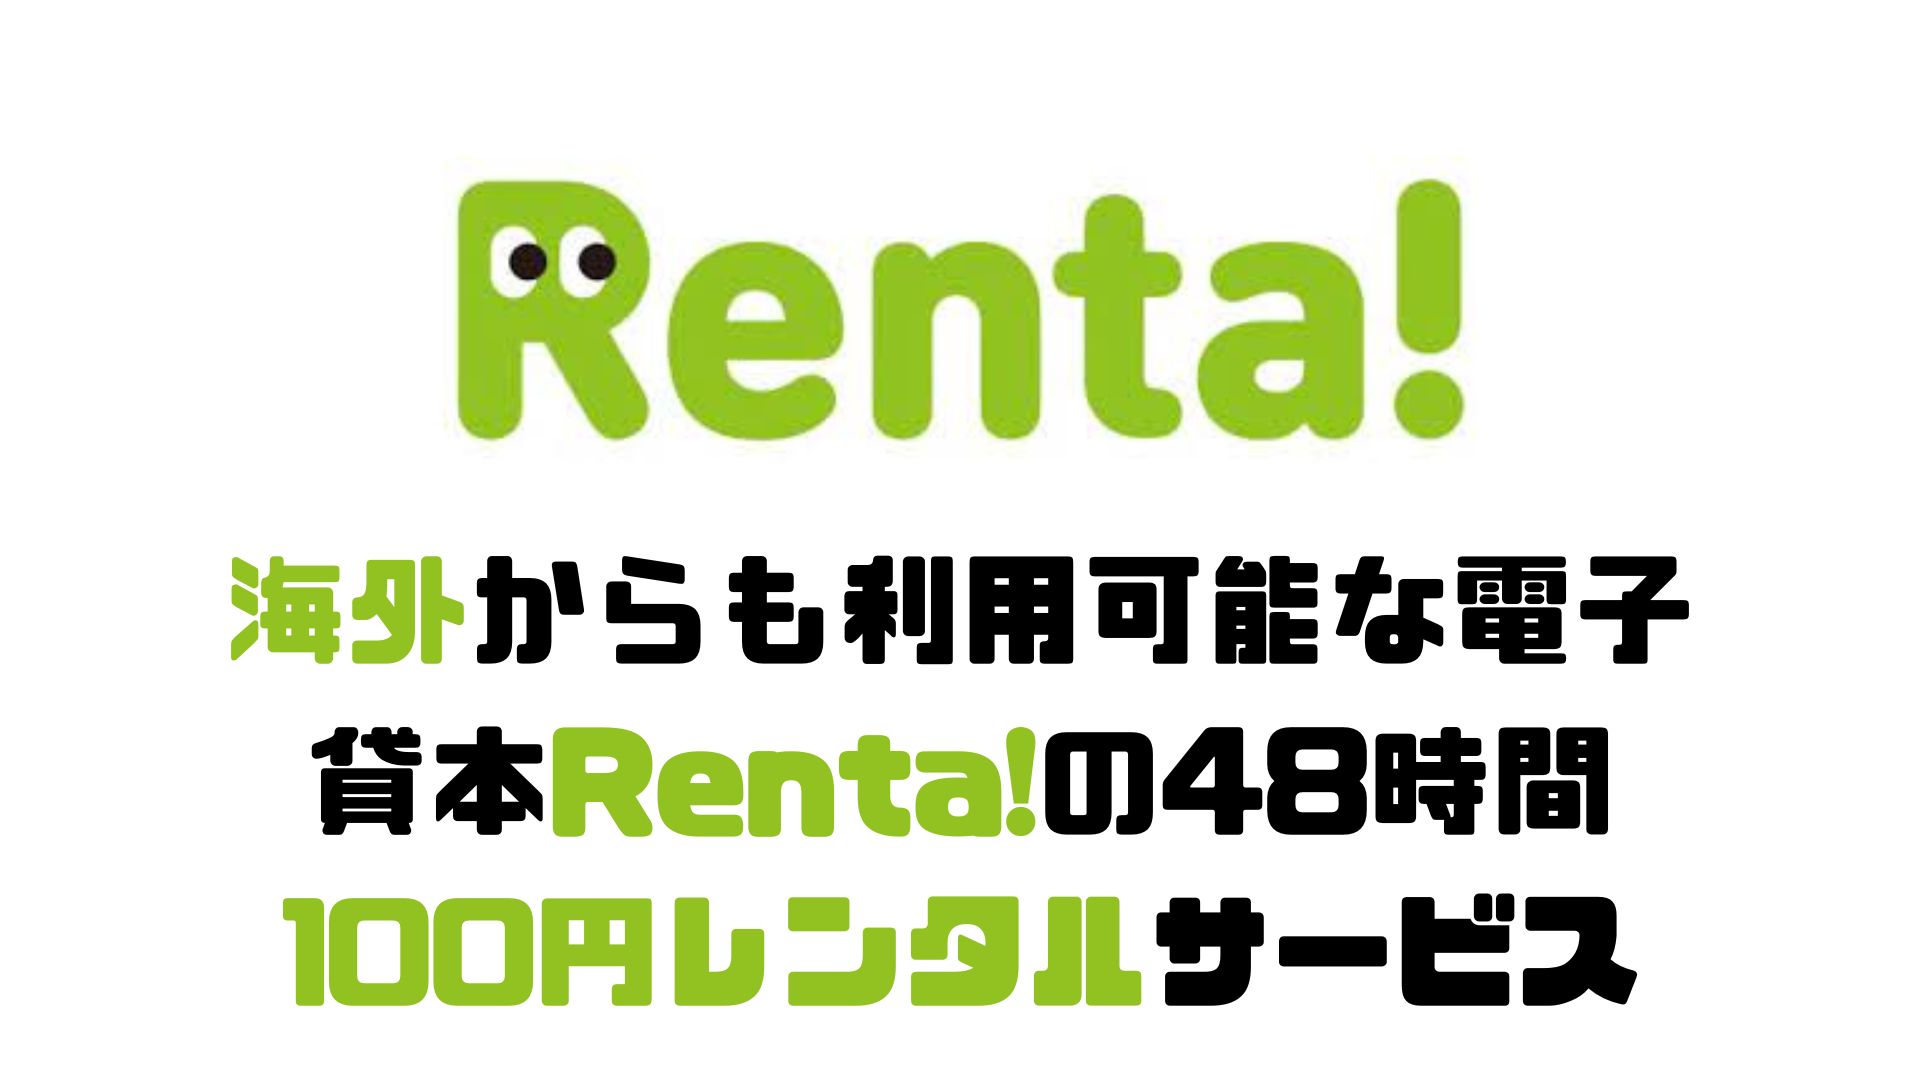 海外からも利用可能な電子貸本Renta!の48時間100円レンタルサービス